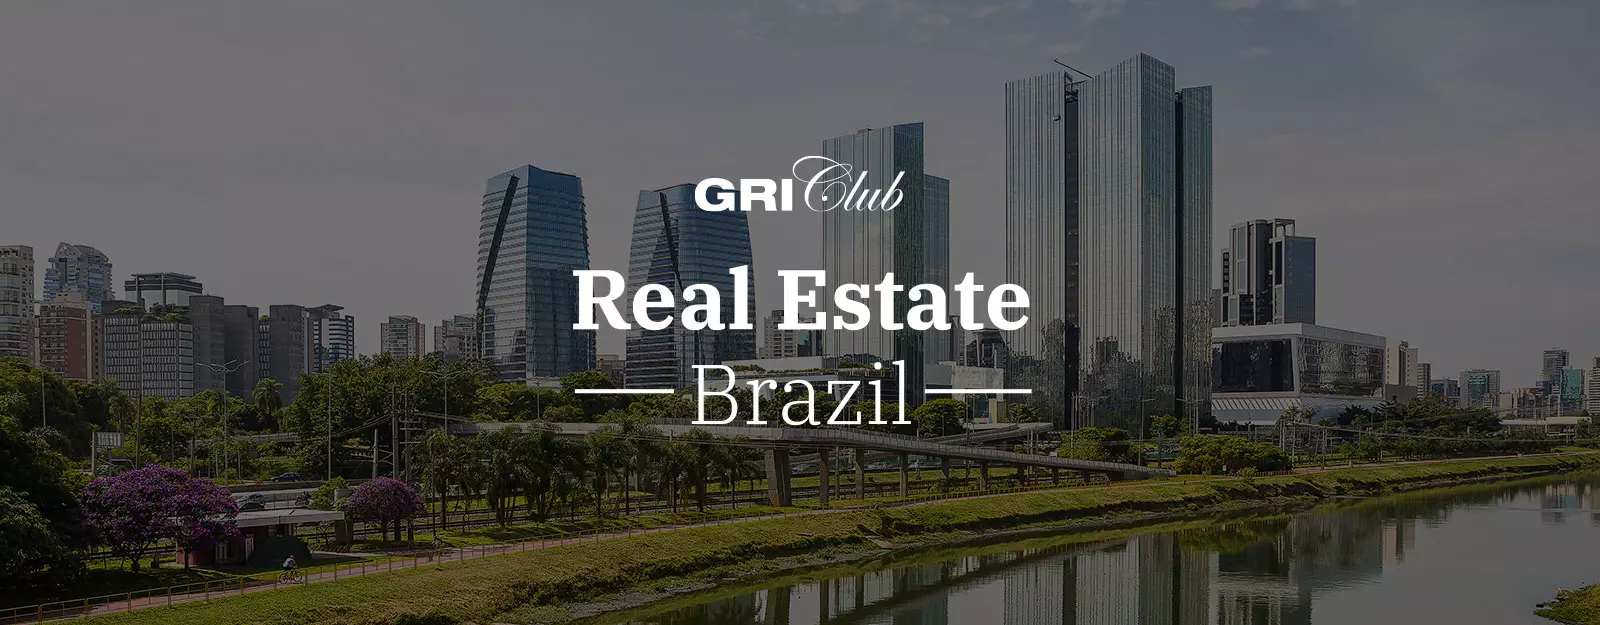 Club Real Estate Brasil 